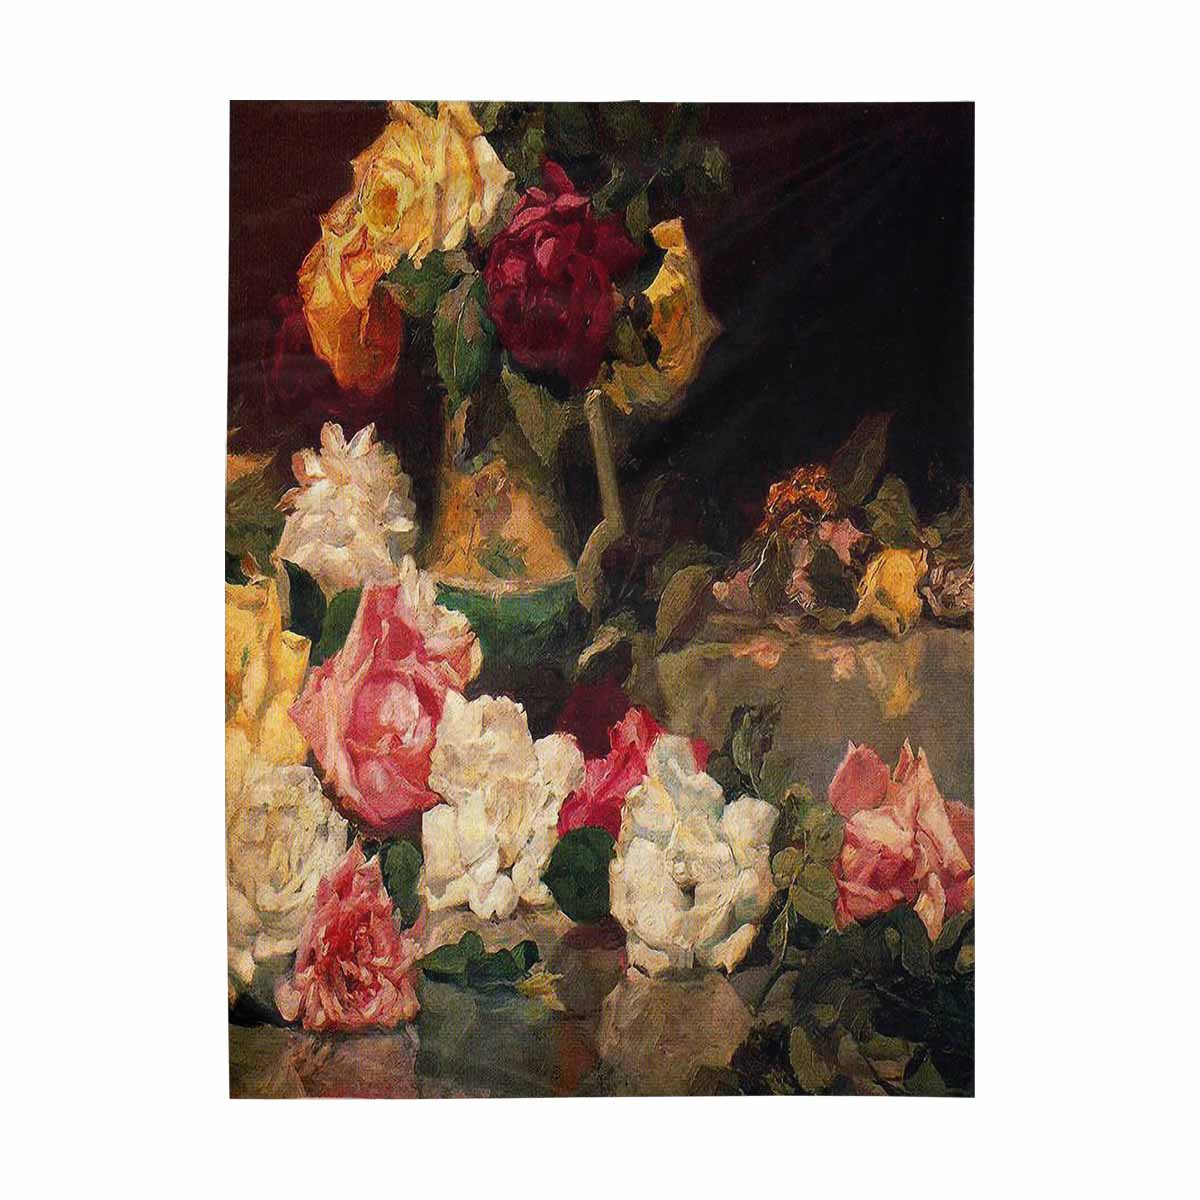 Vintage floral TAPESTRY, LARGE 60 x 80 in, Vertical, Design 37